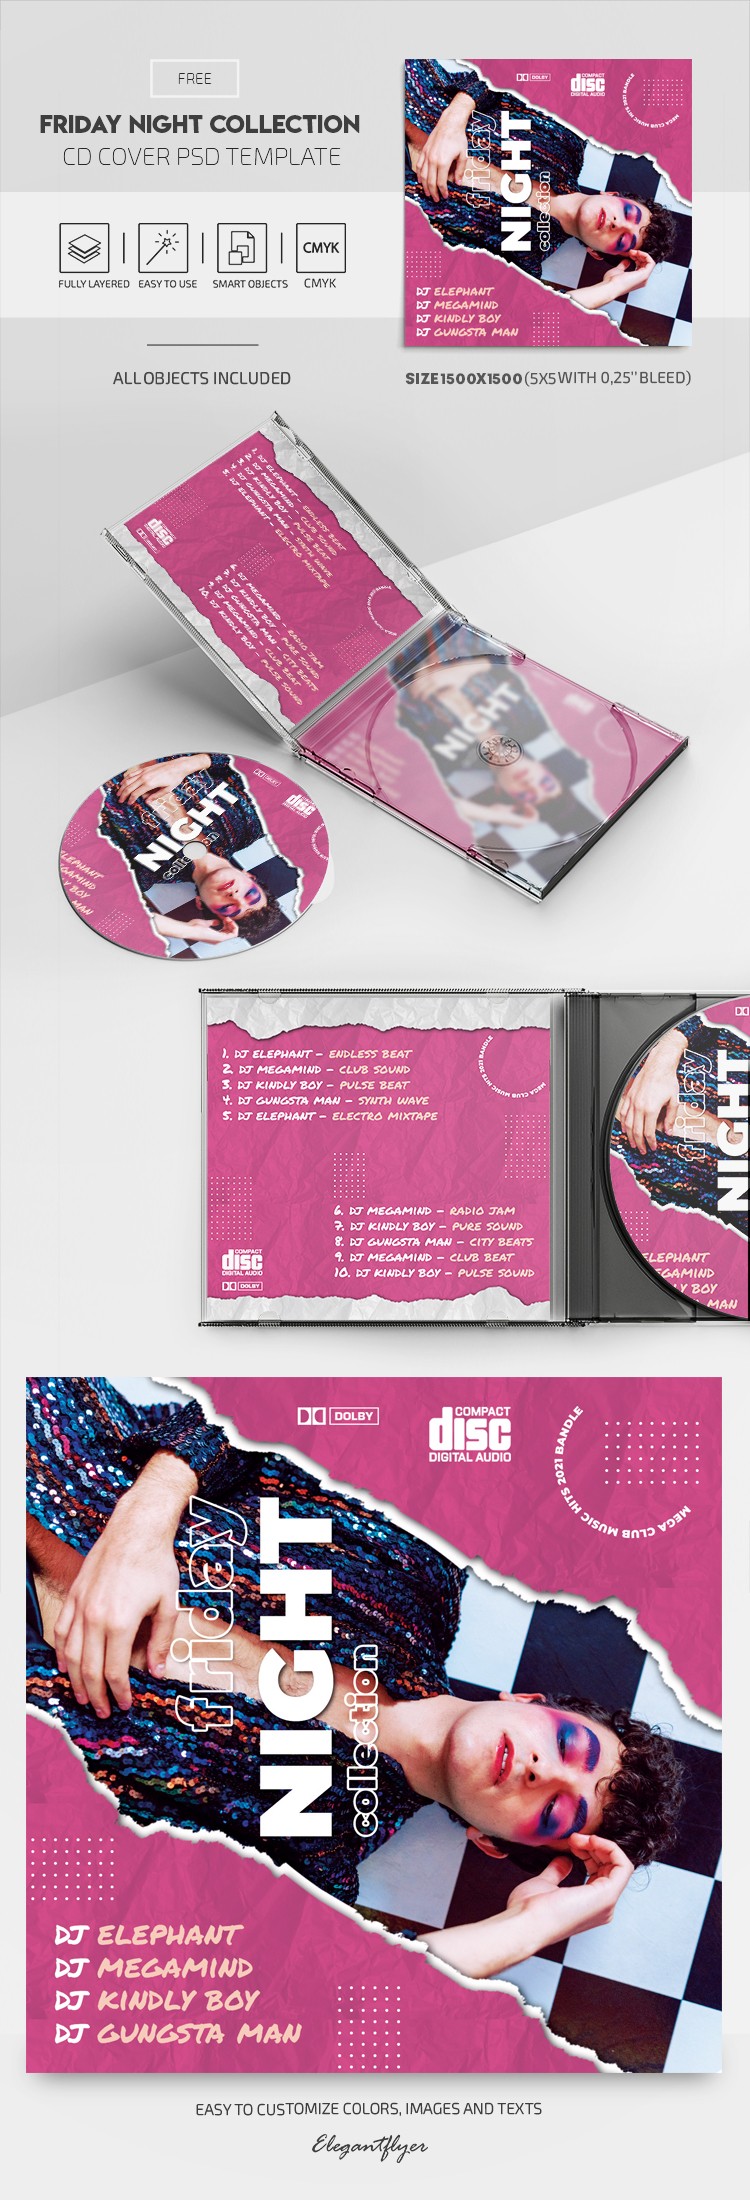 Capa do CD da Coleção de Sexta-feira à Noite by ElegantFlyer